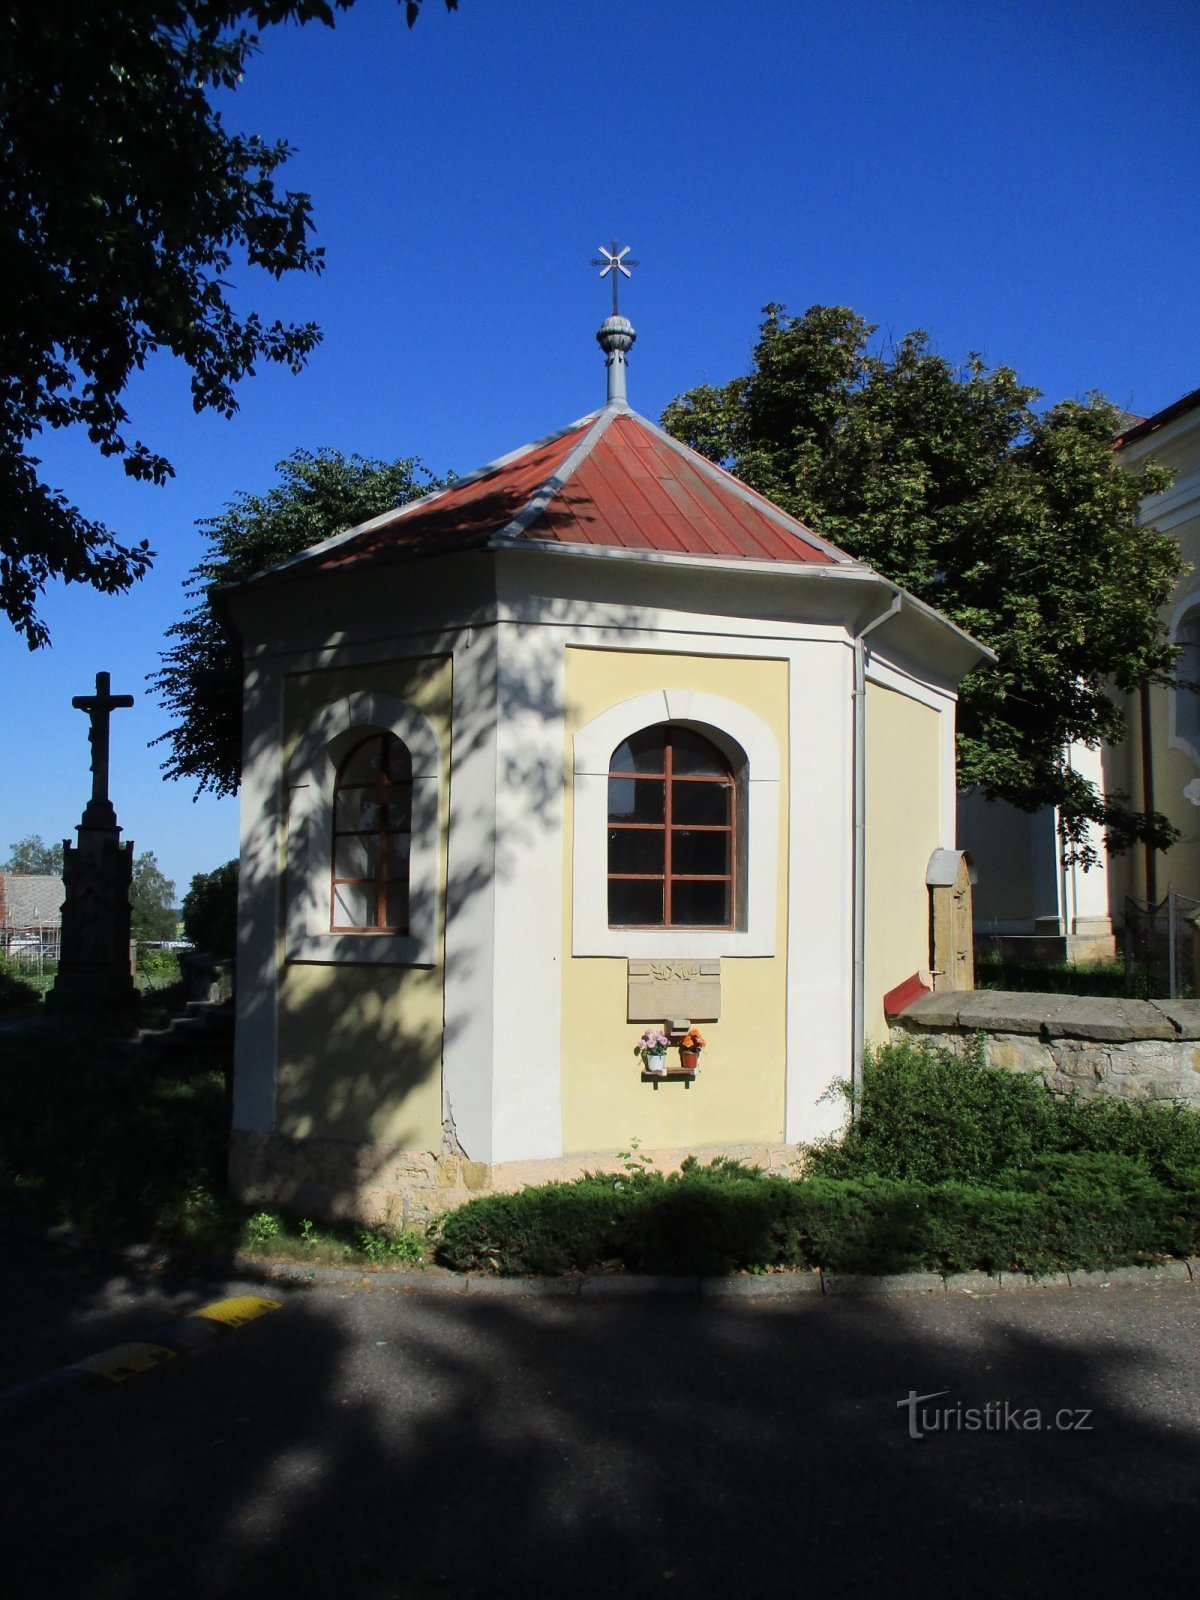 L'obitorio della chiesa di S. Pietro e Paolo, apostoli (Milovice)